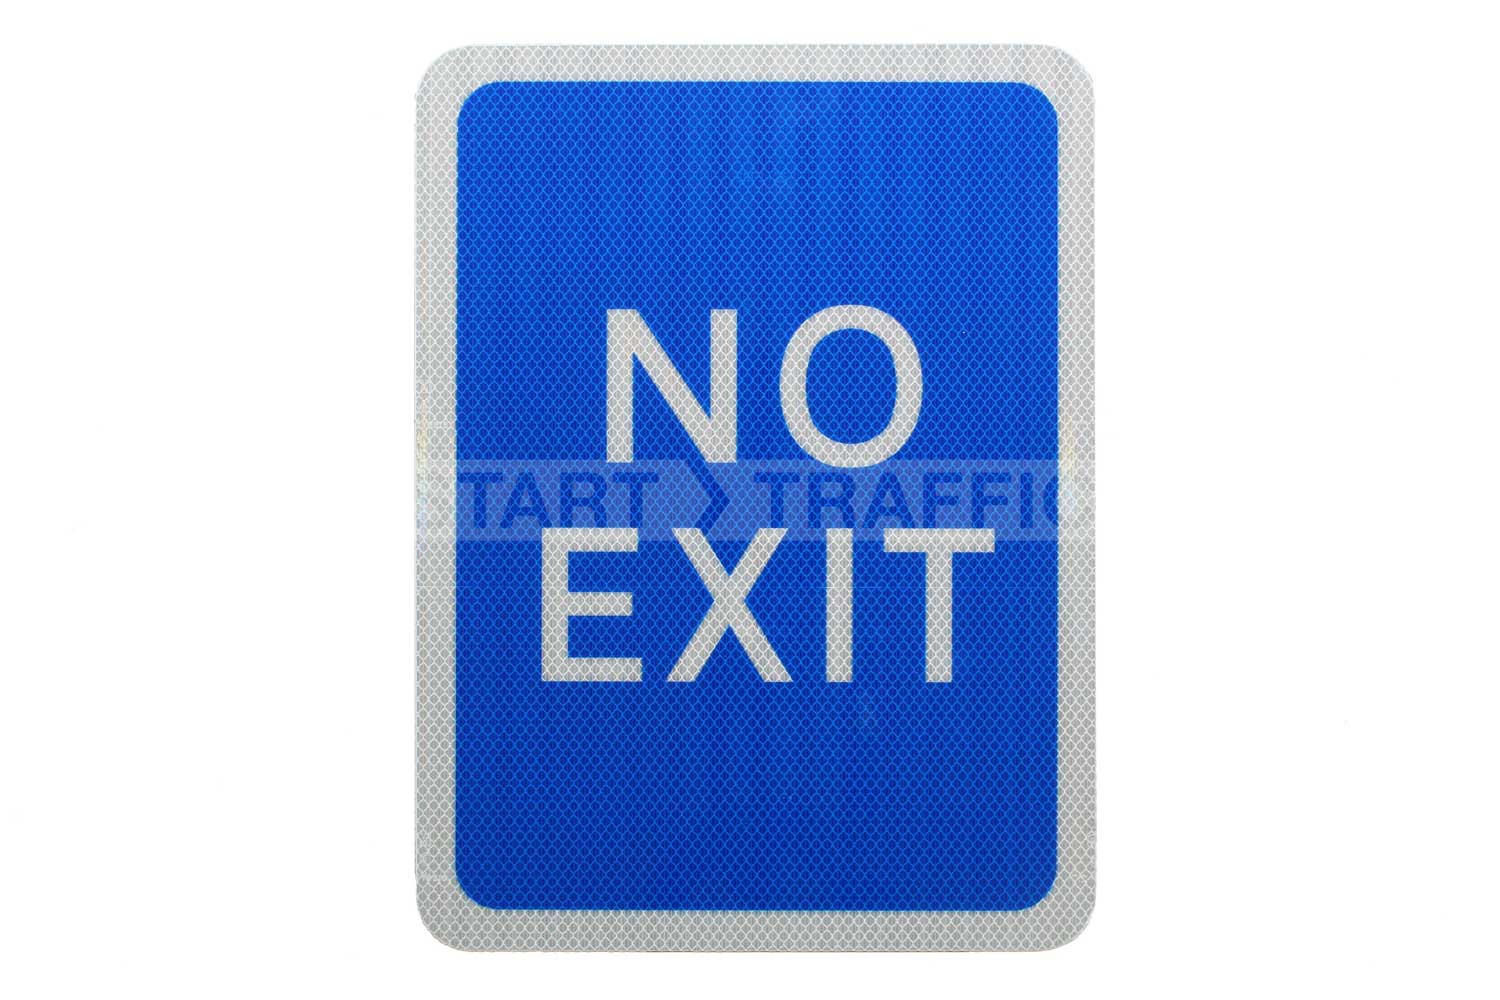 No Exit sign